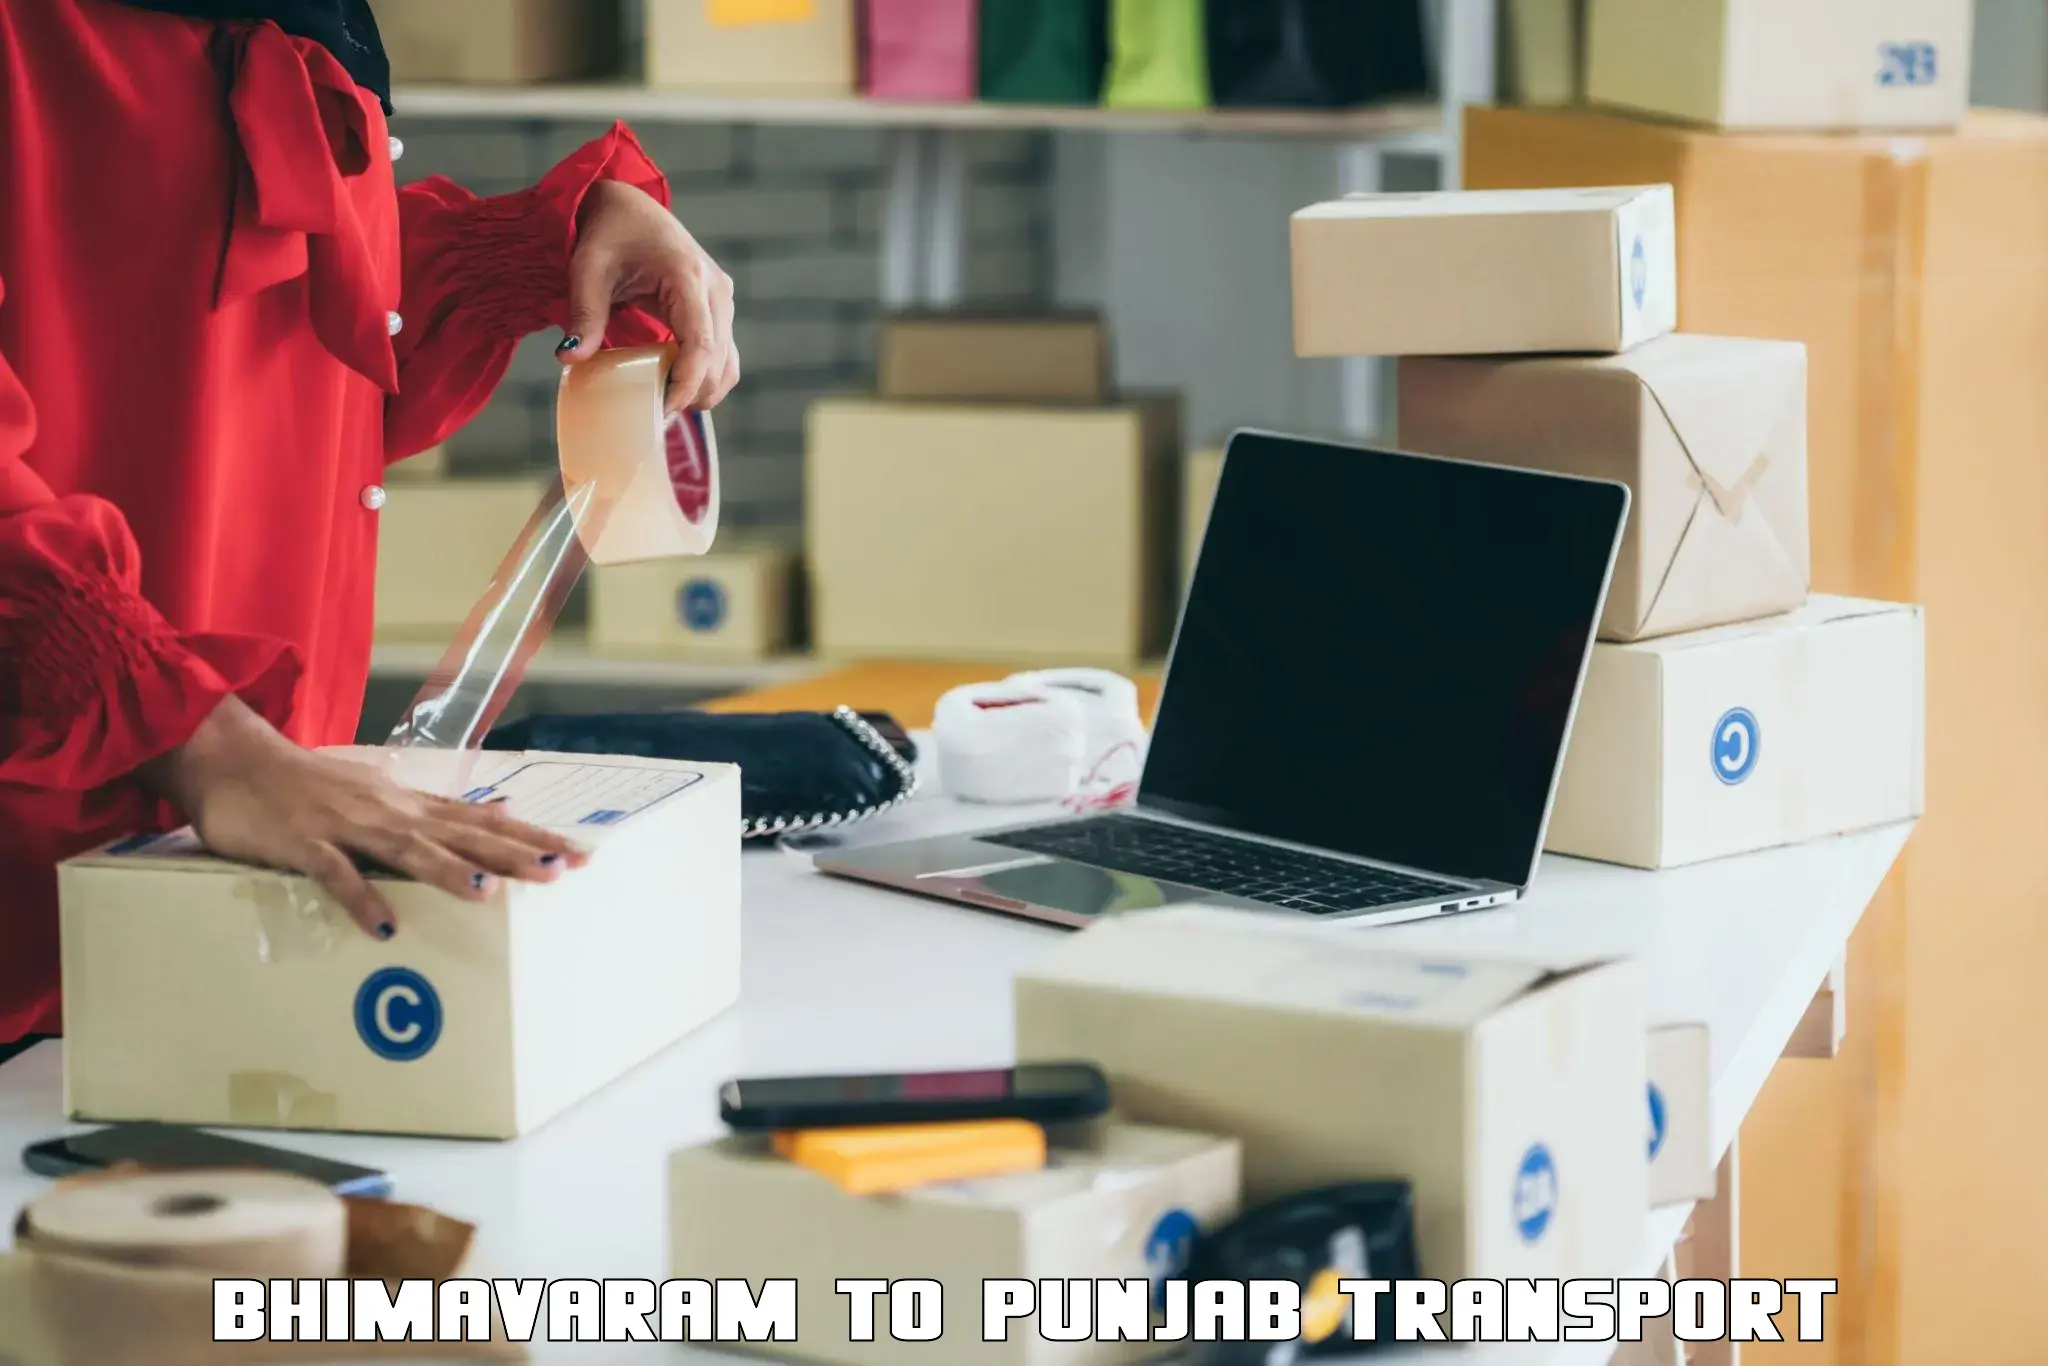 Furniture transport service in Bhimavaram to Punjab